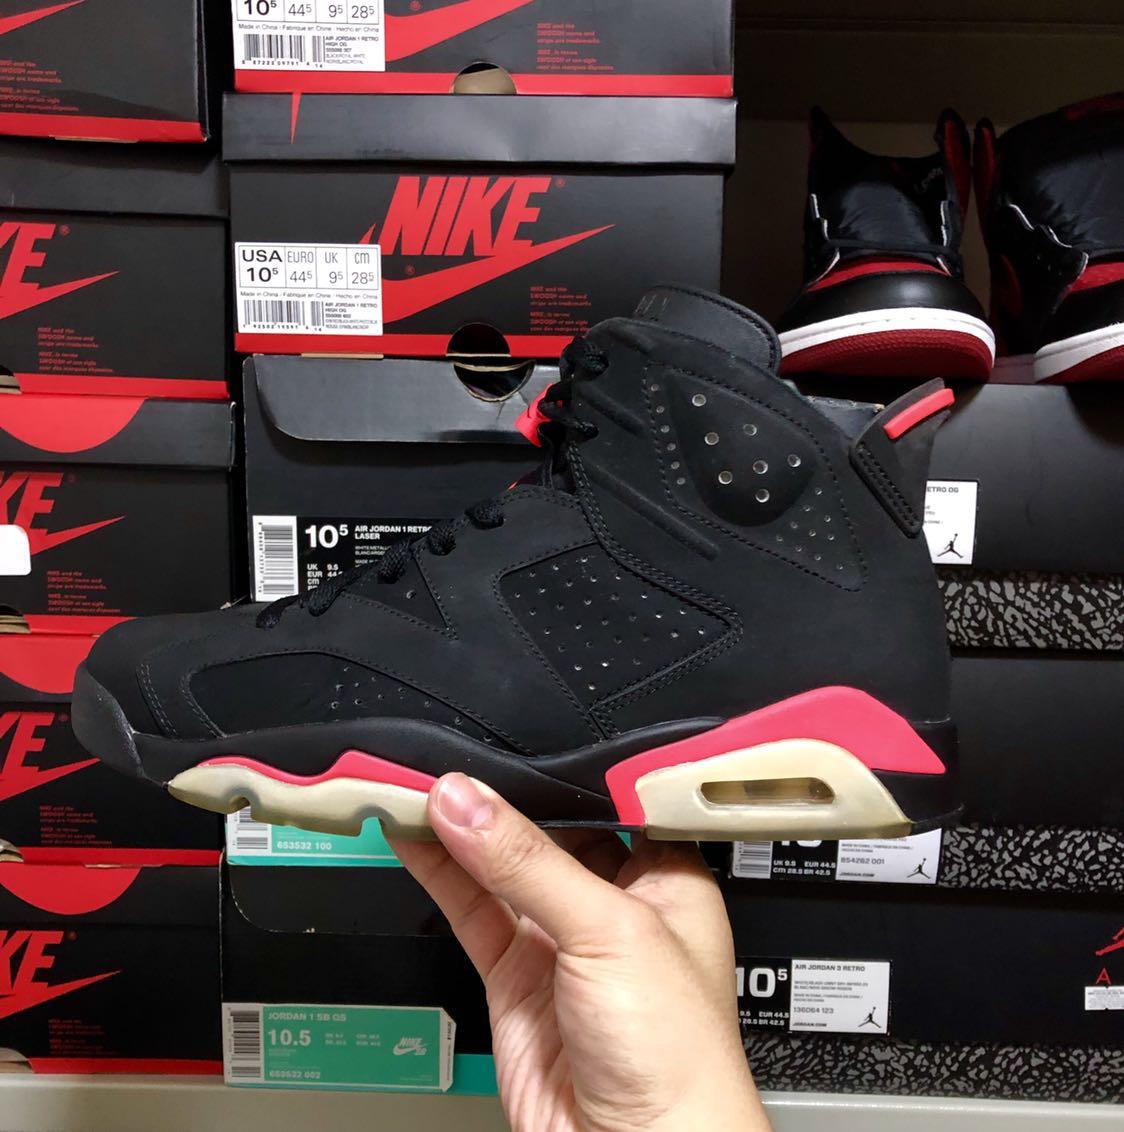 Air Jordan 6 Infrared Black 2014, Men's Fashion, Footwear ...